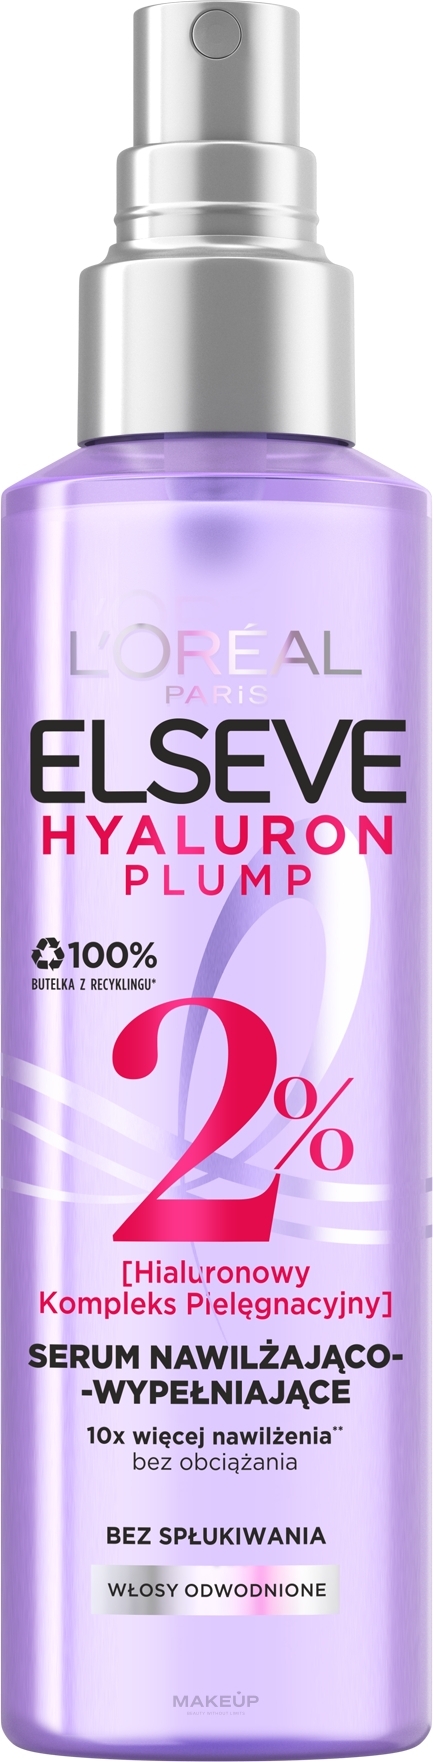 Nawilżająco-wypełniające serum do włosów odwodnionych z kwasem hialuronowym - L'Oreal Paris Elseve Hyaluron Plump — Zdjęcie 150 ml